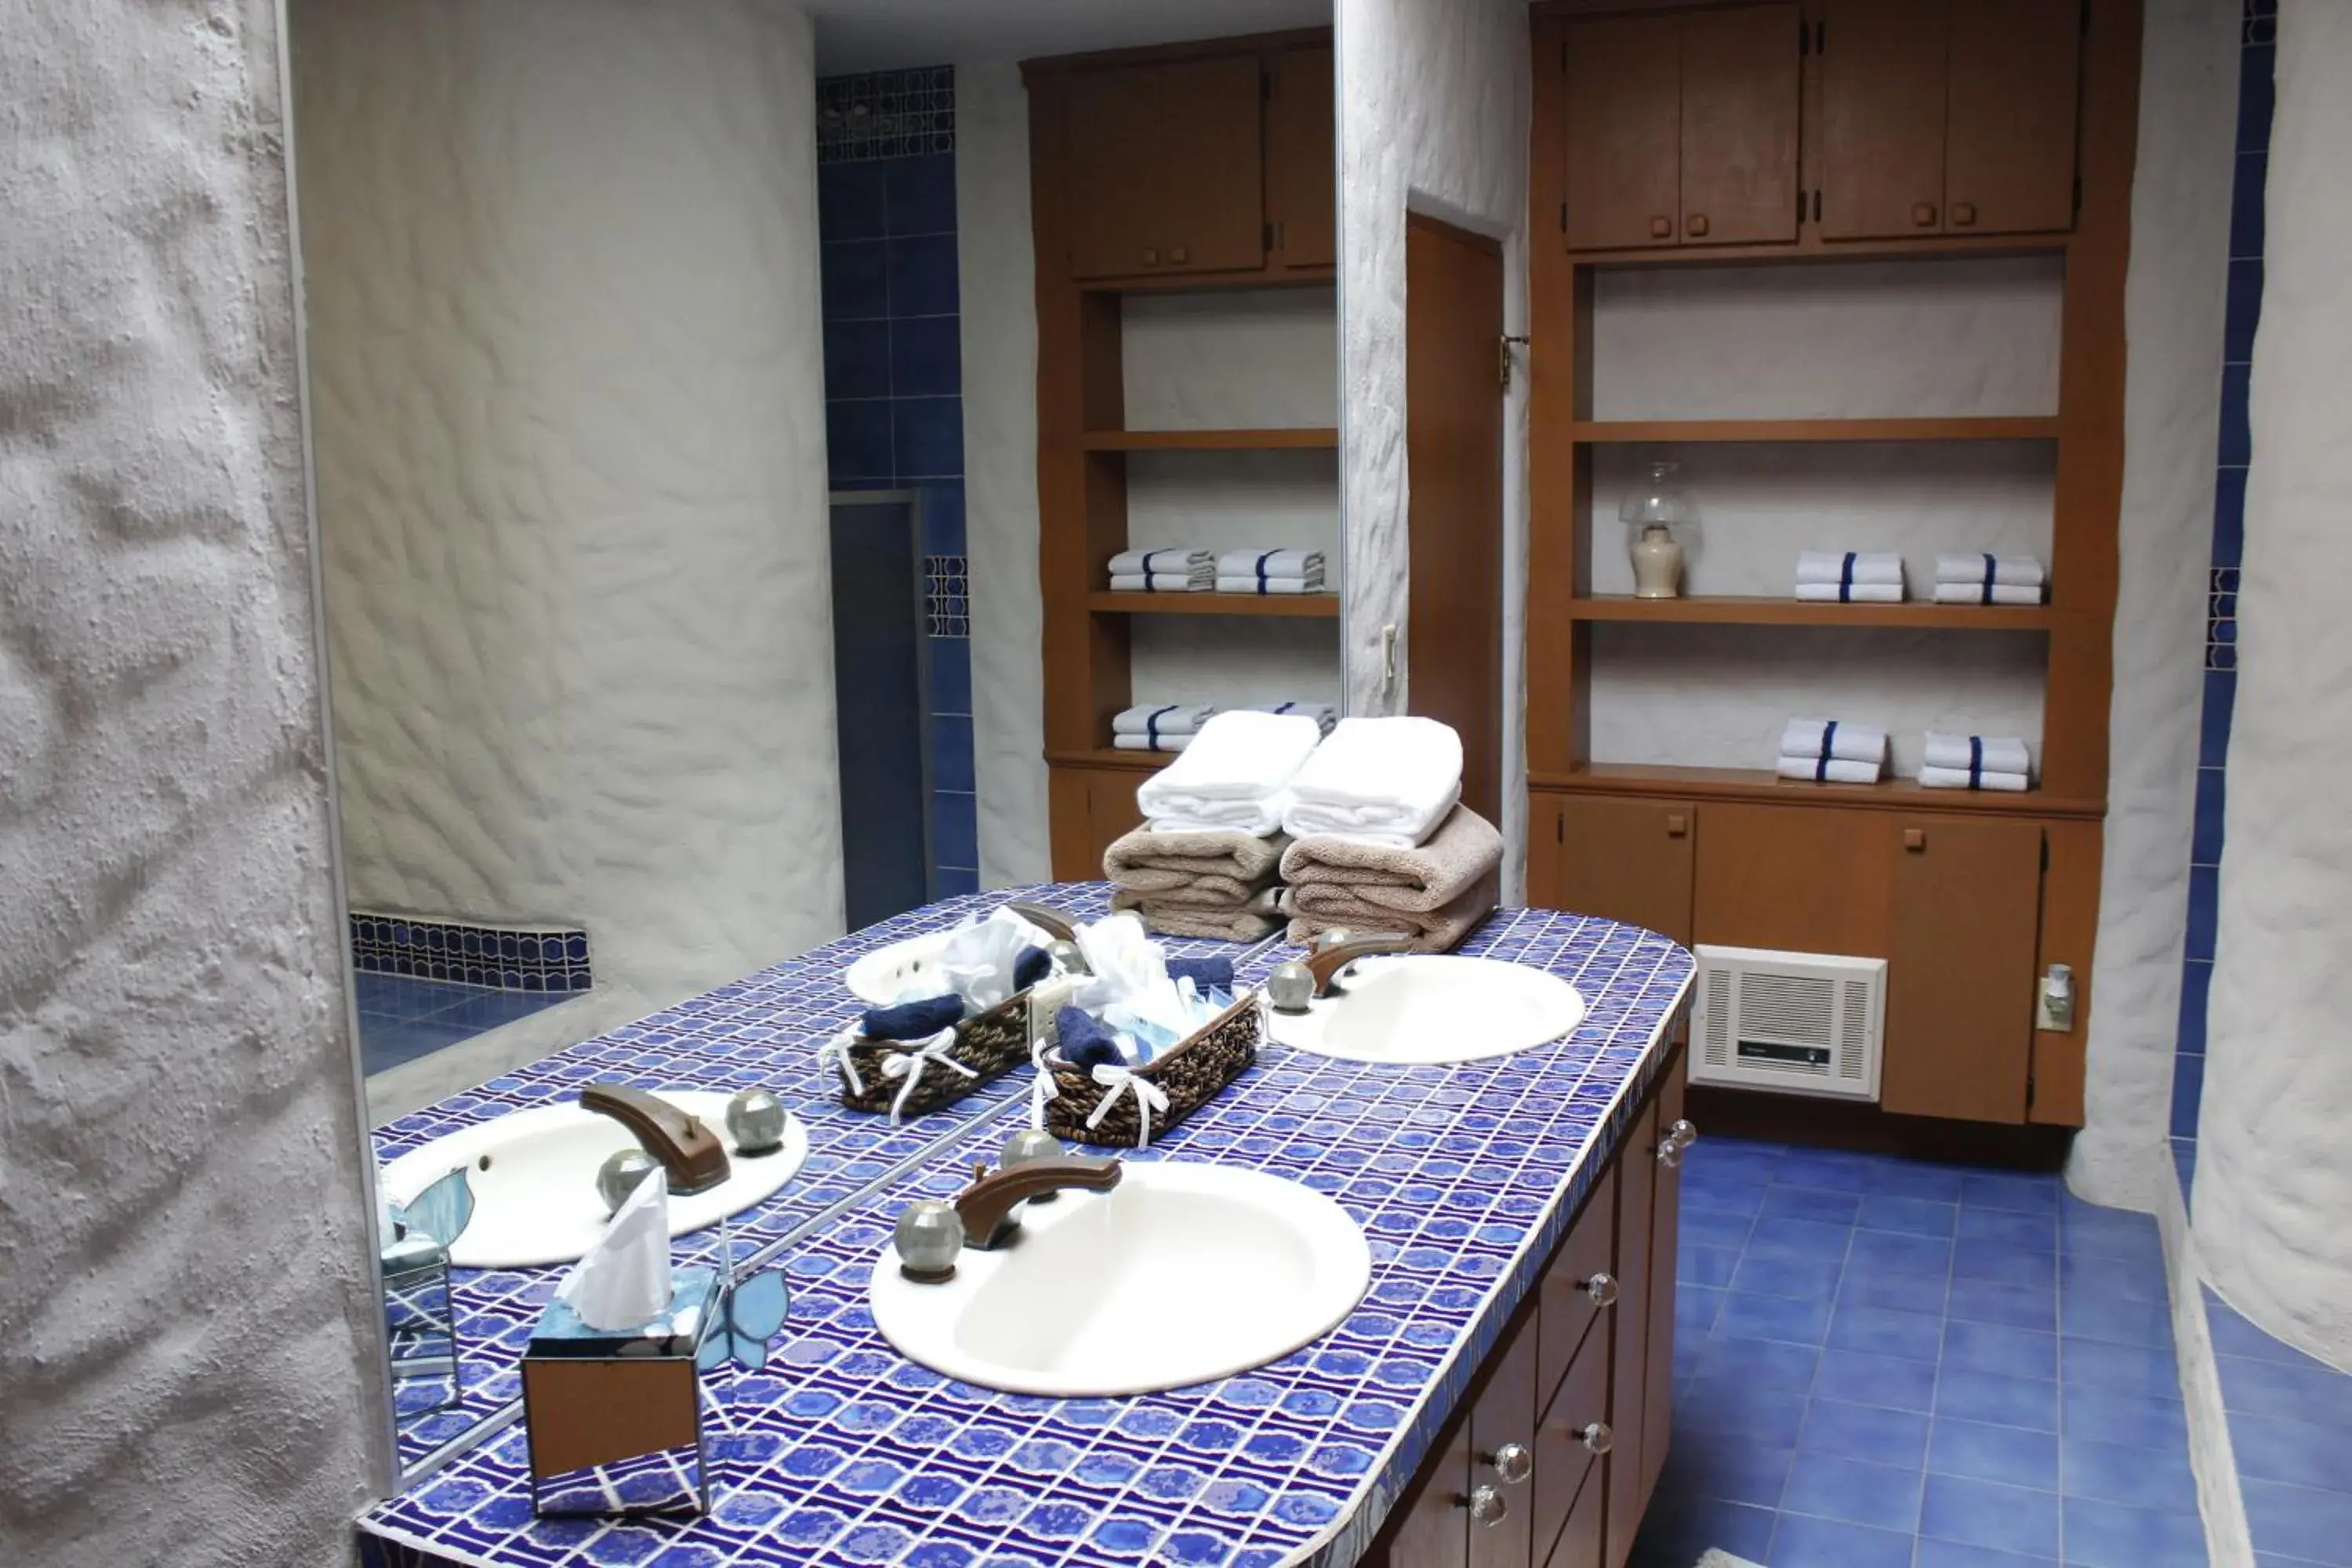 Bathroom in Castillos Del Mar